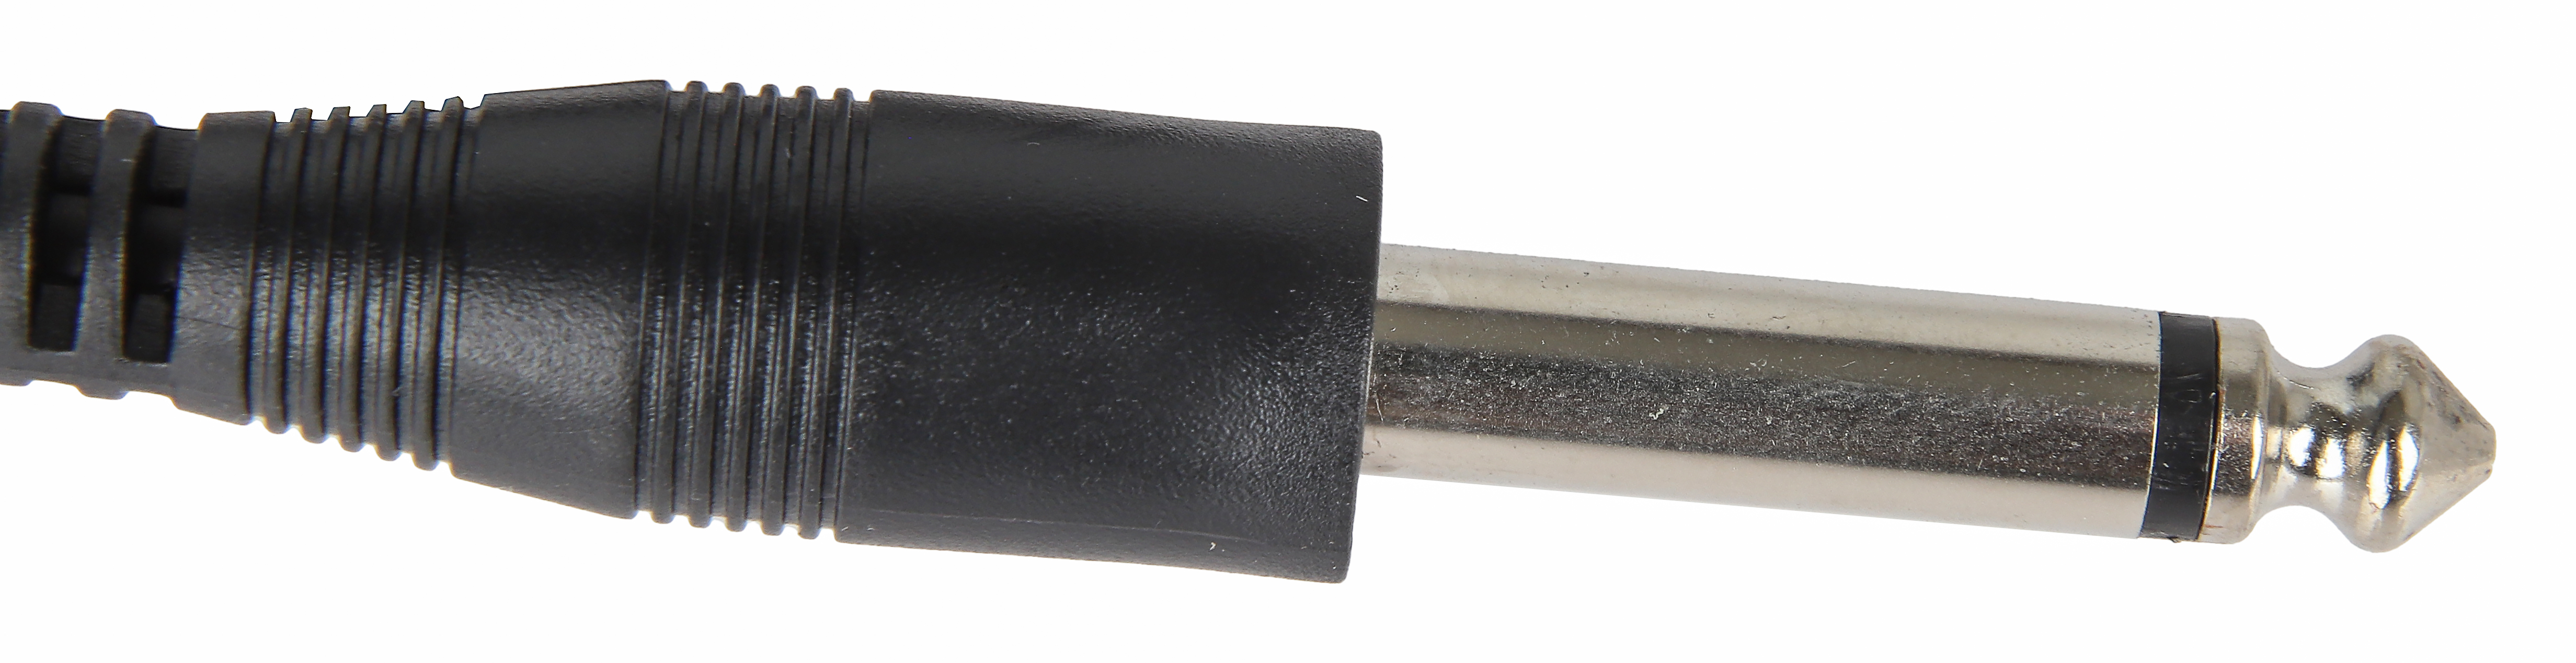 PC-1/2 Anschlusskabel 6,35 mm Klinke z.B. zum Fernauslösen eines Studioblitzes geeignet